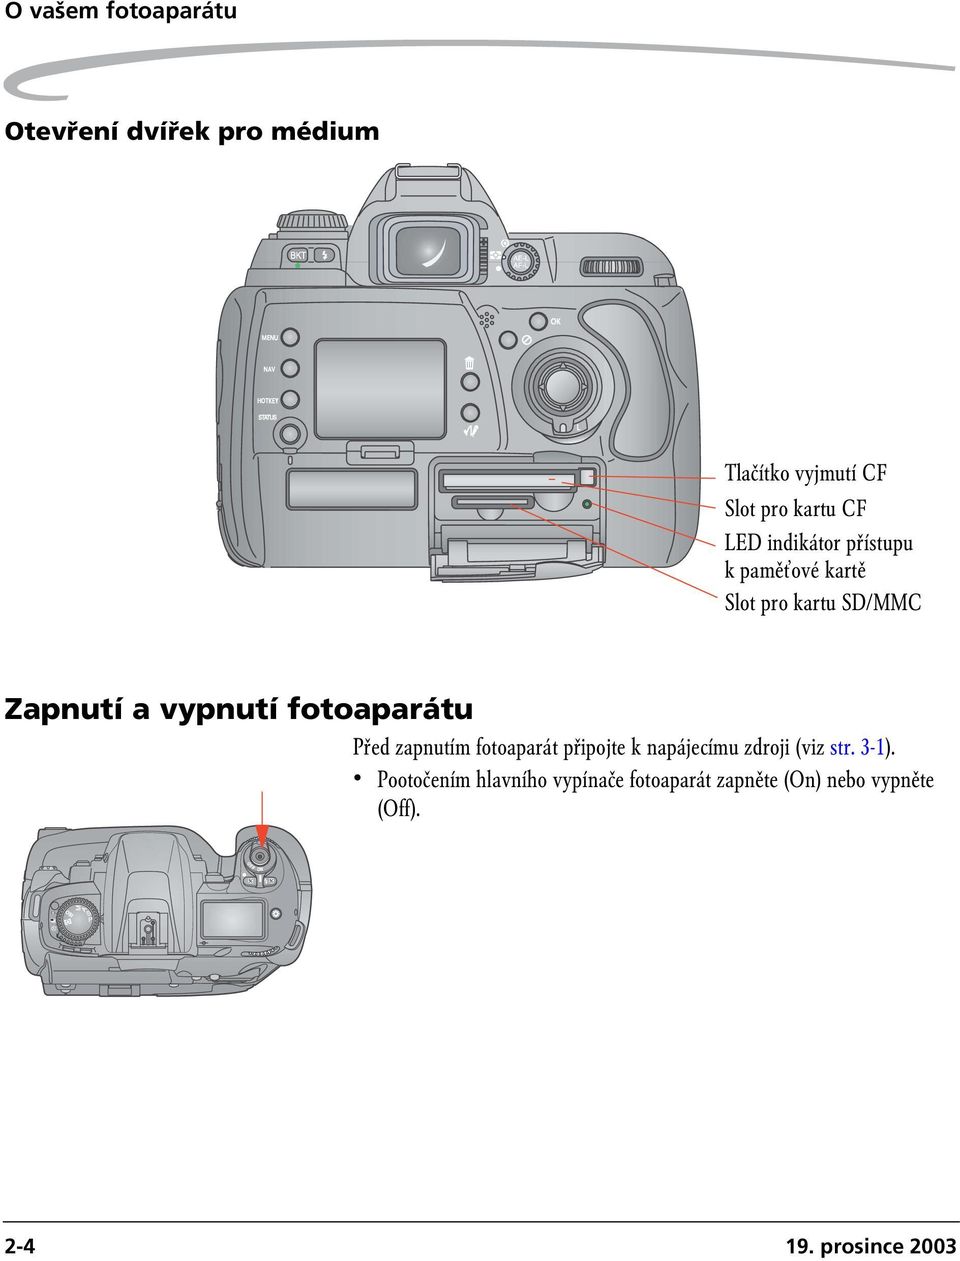 fotoaparátu Před zapnutím fotoaparát připojte k napájecímu zdroji (viz str. 3-1).